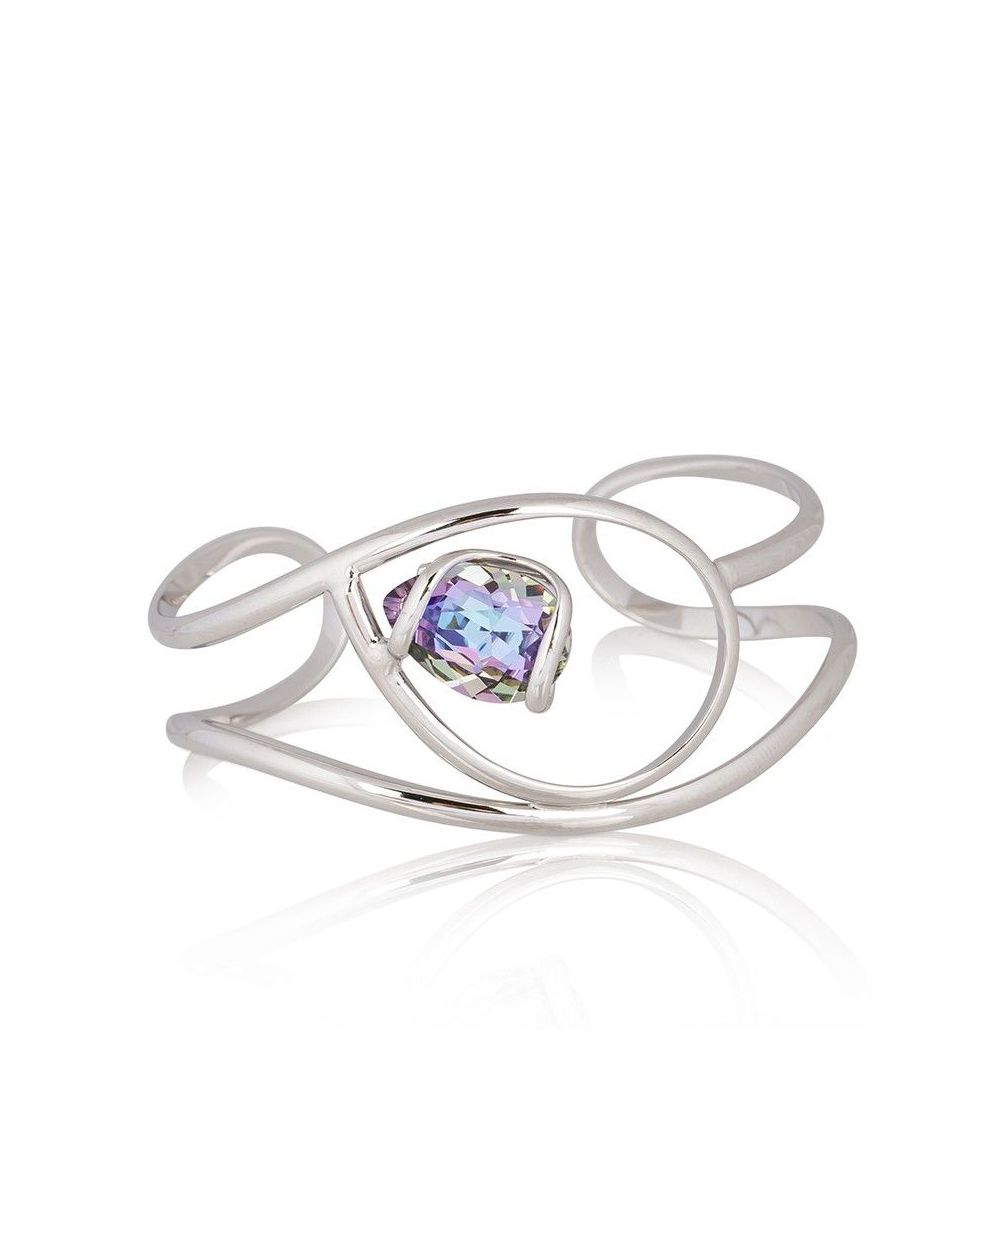 Andrea Marazzini bijoux - Bracelet cristal Swarovski Pear Vitral Light